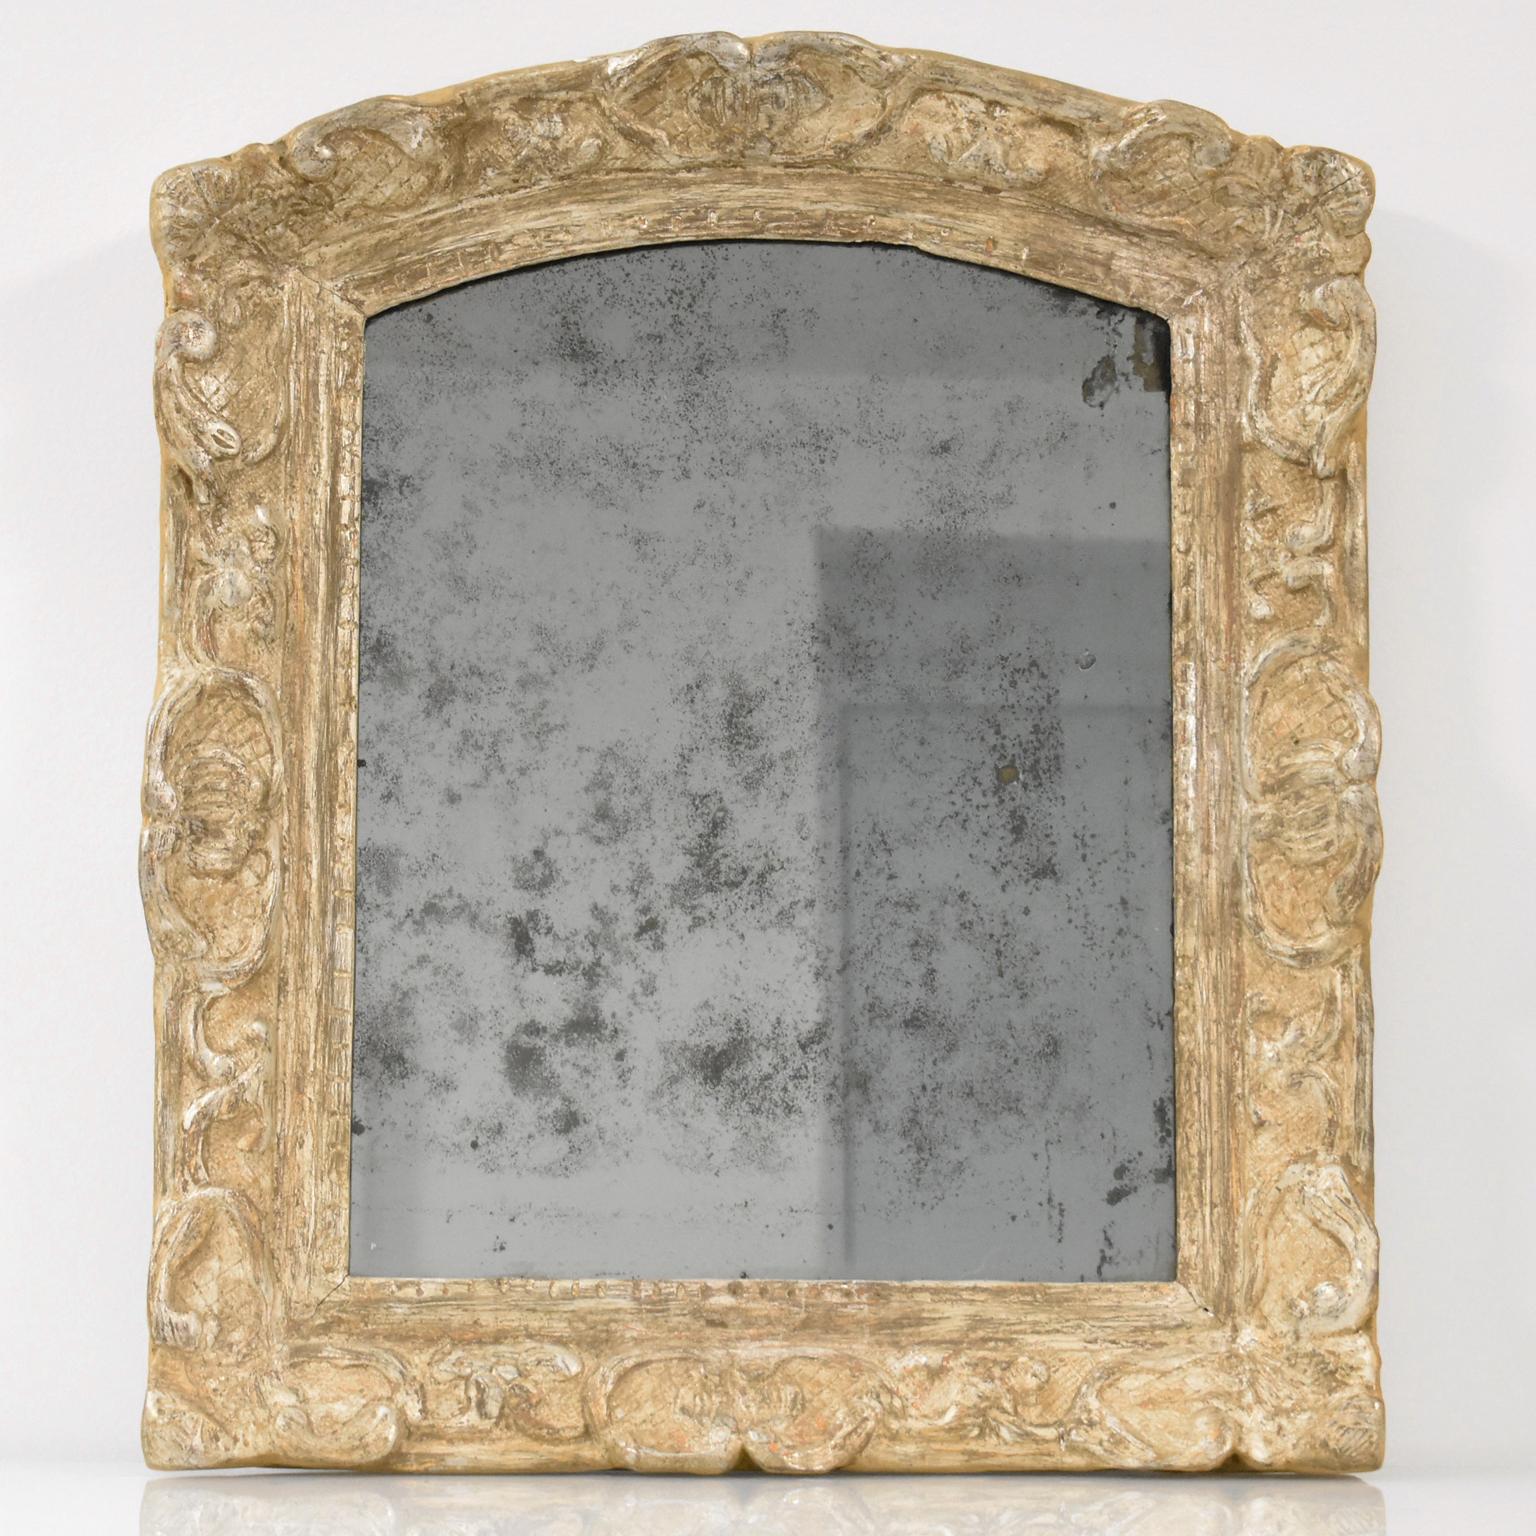 Cet élégant miroir mural en chêne sculpté à la main, de qualité muséale, a été fabriqué en France au XVIIe siècle. La pièce bénéficie d'un encadrement de grande qualité d'époque Louis XIV avec dorure à la feuille d'argent dans un décor sculpté 